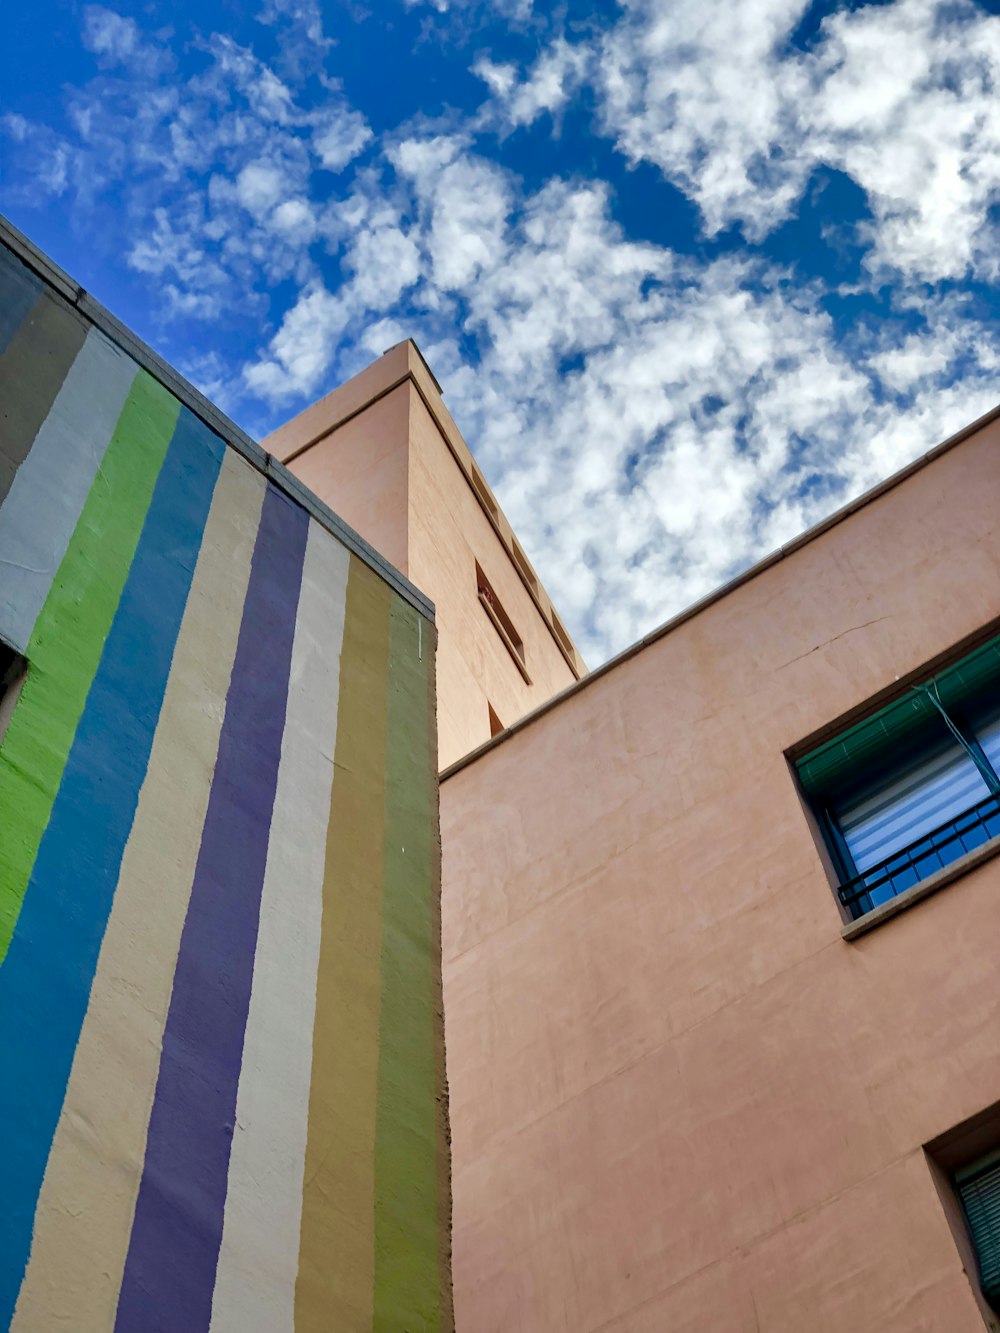 Edificio multicolore durante il giorno